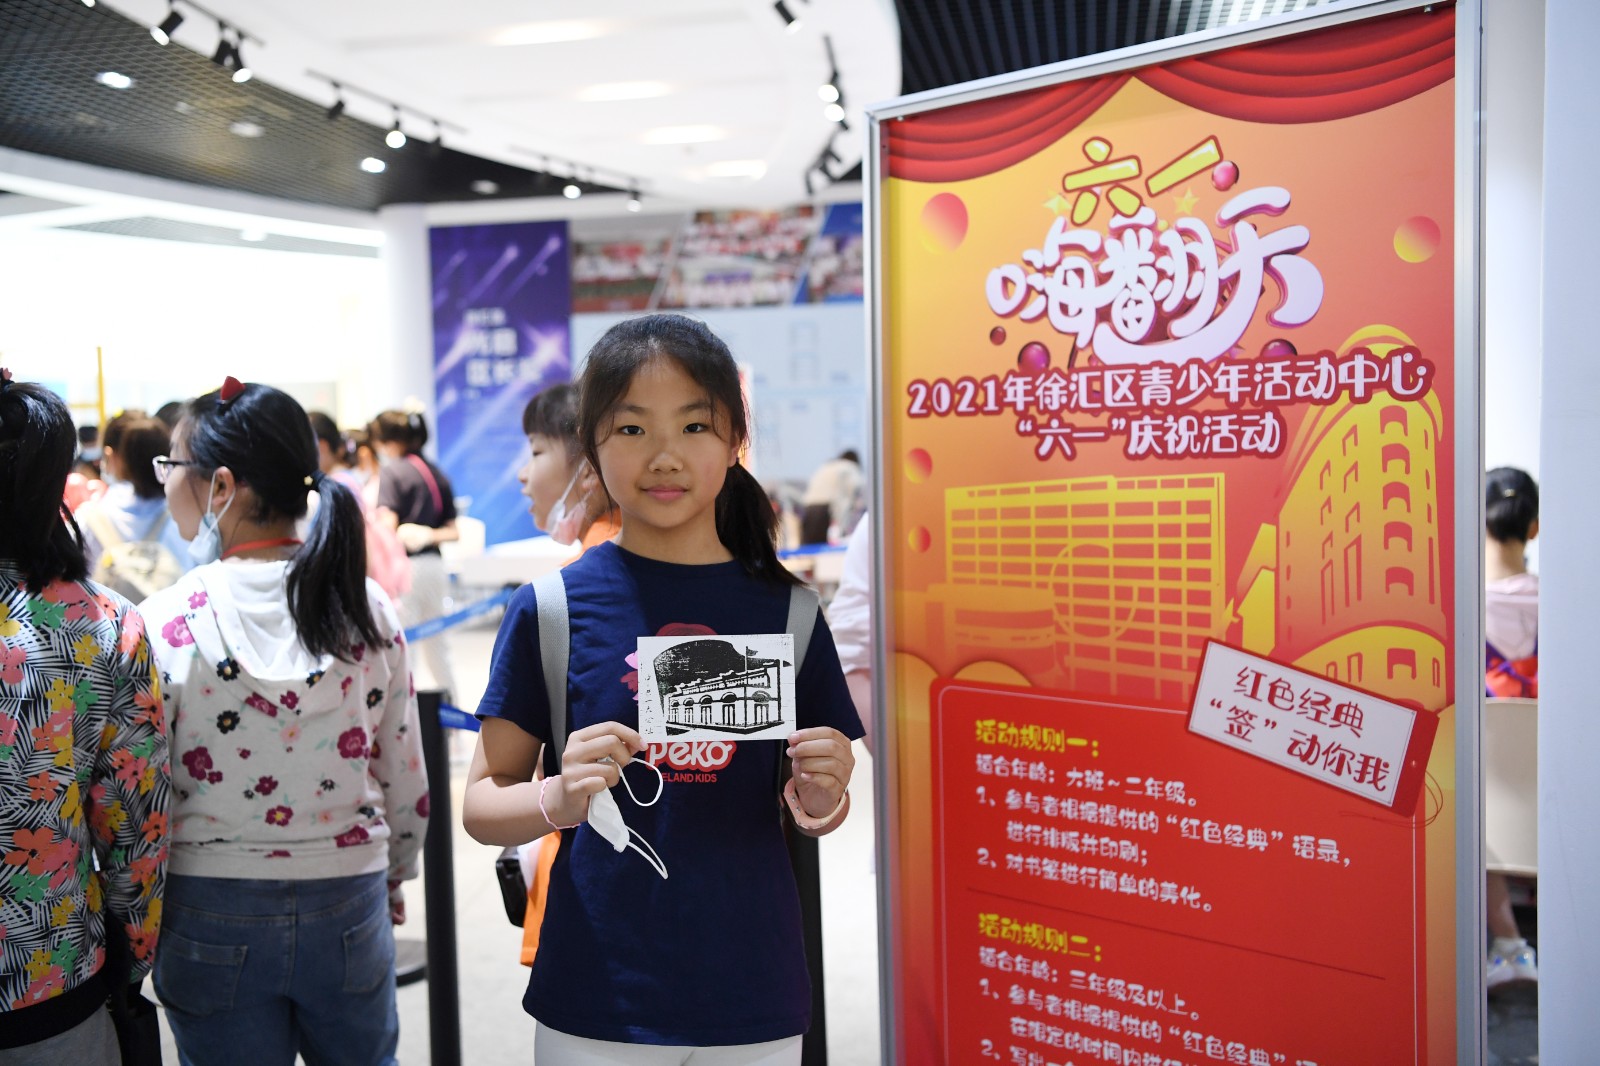 六一嗨翻天——2021年徐汇区青少年活动中心庆祝“六一”活动